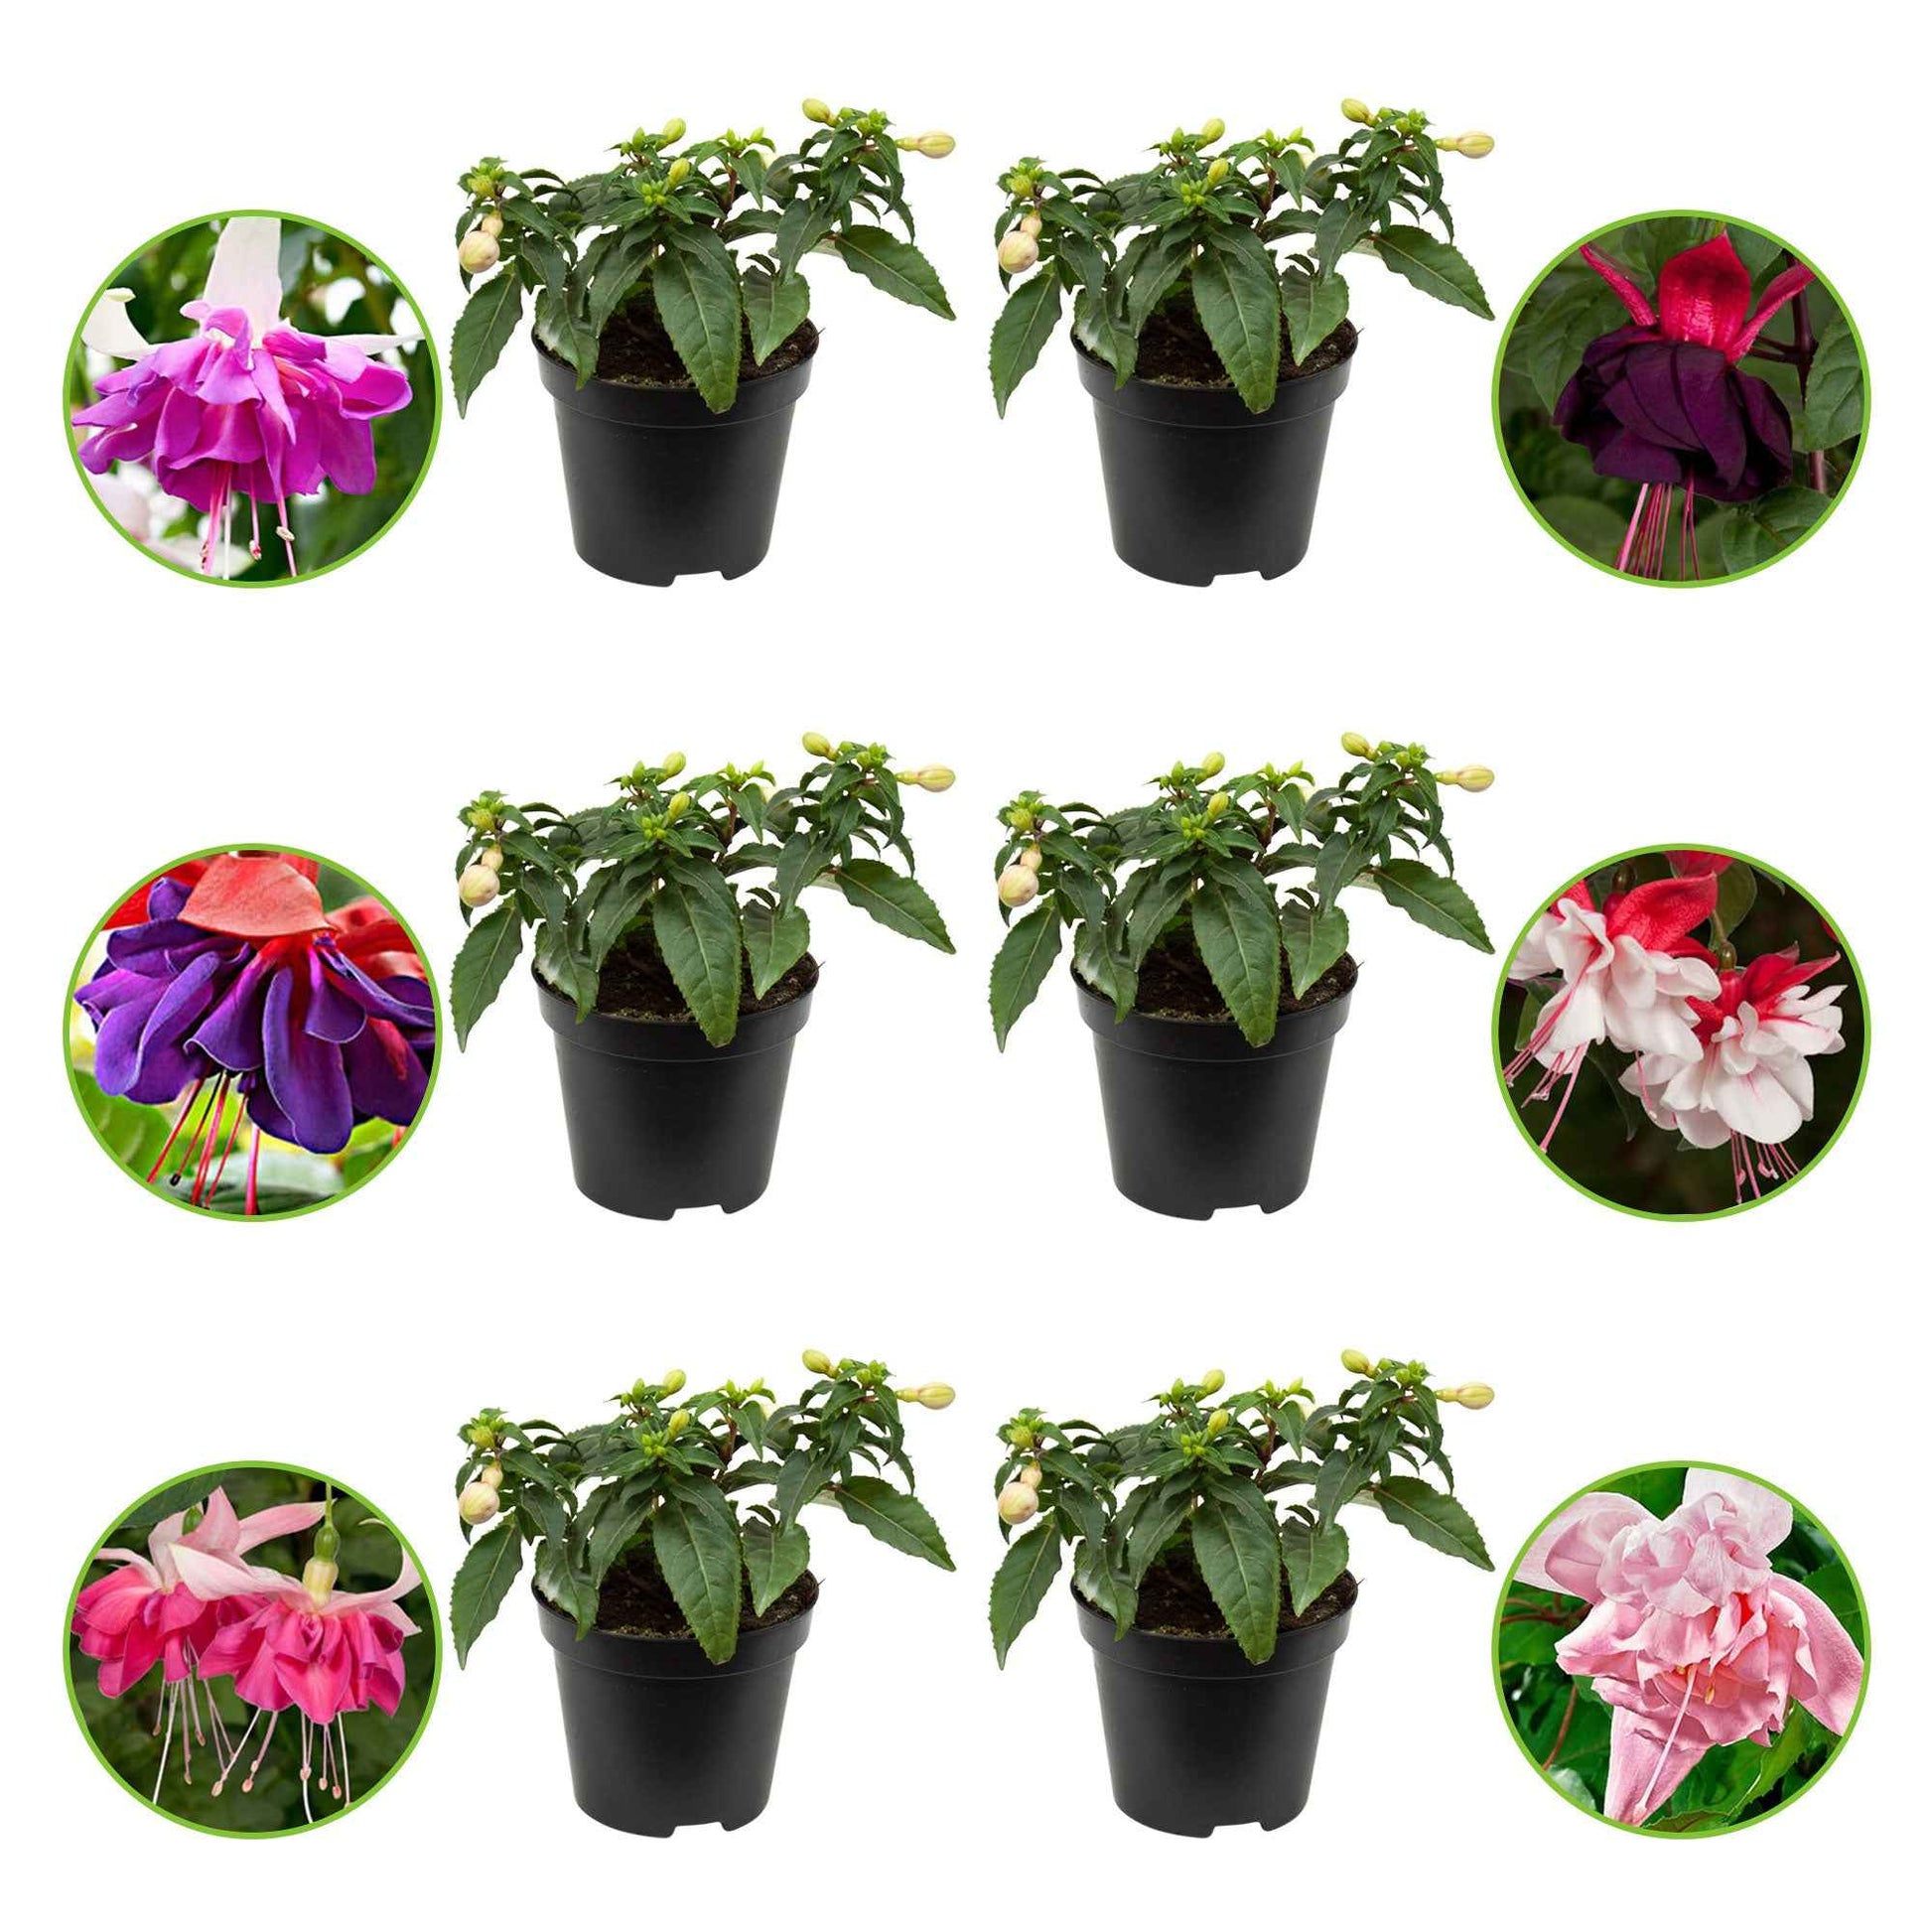 Fuchsia Mischung 'All in One' (x6) - Fuchsia Bella Rosella, Blue Mirage, New Millenium, Pink Marshmallow - Sträucher und Stauden